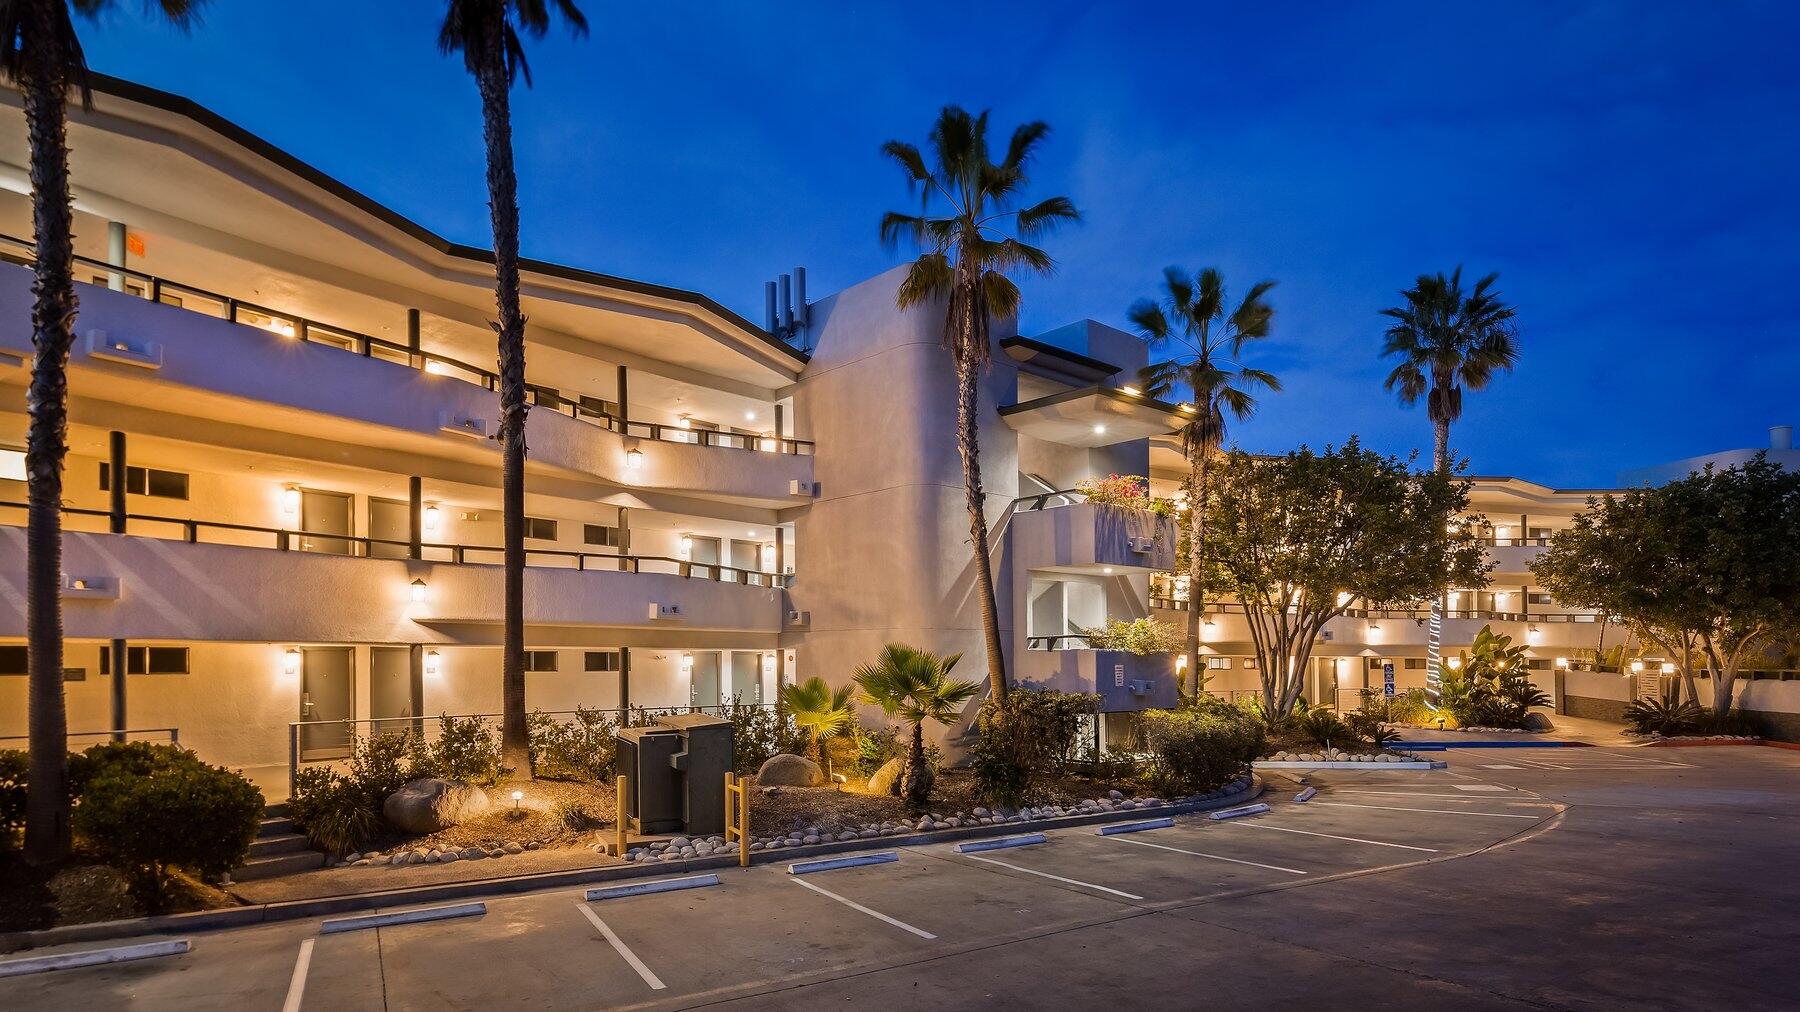 Best Western Encinitas Inn Suites Moonlight Beach Hotel - 